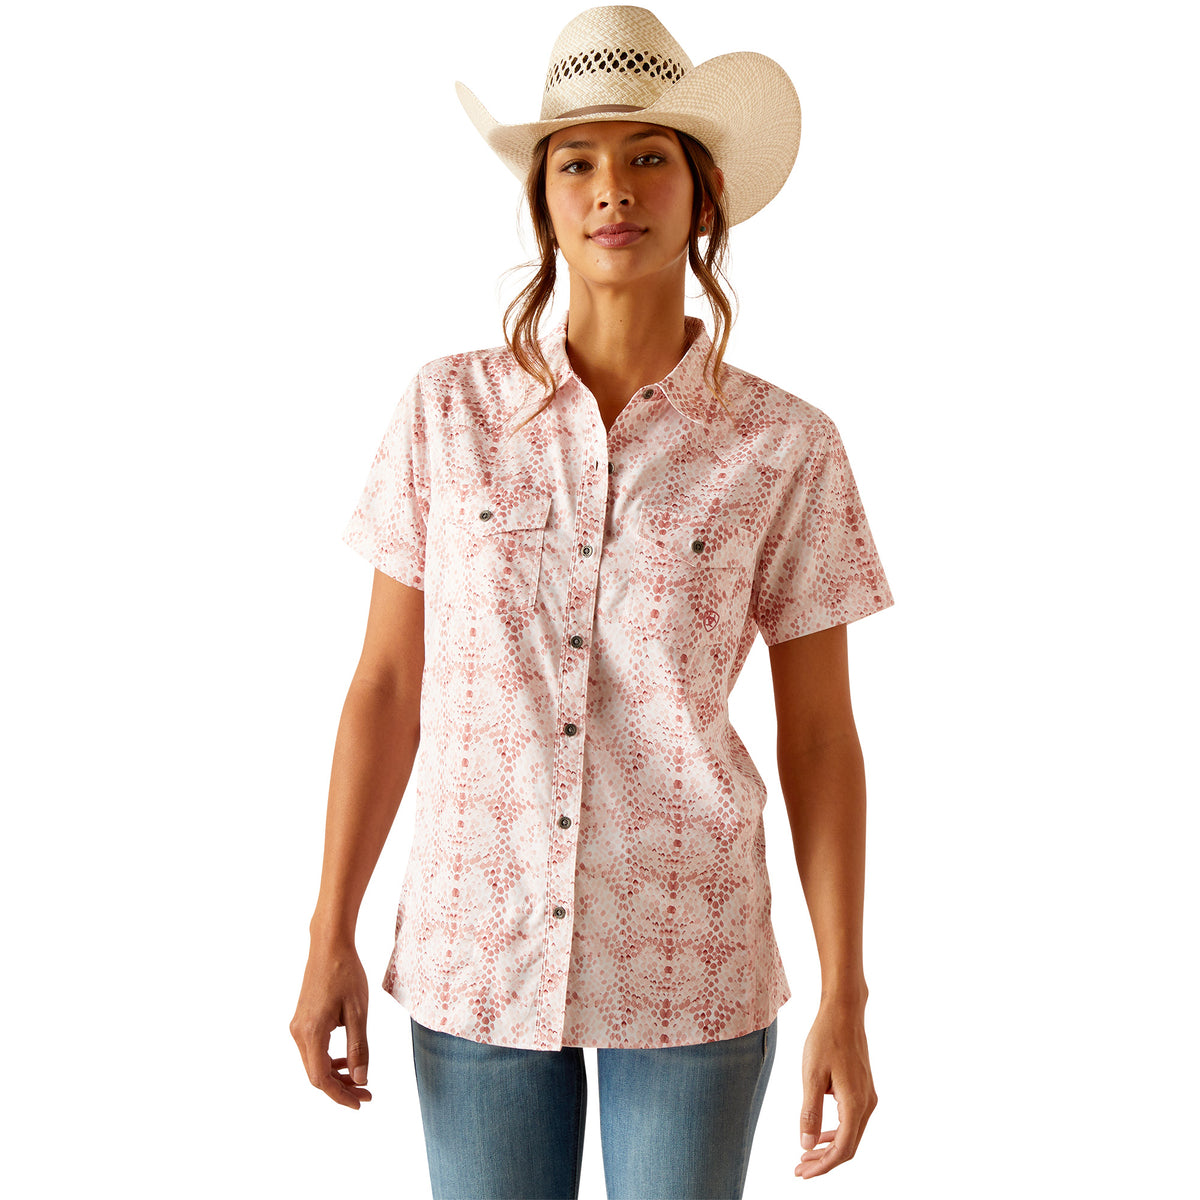 Ariat Women's Western VenTEK Short Sleeve Shirt